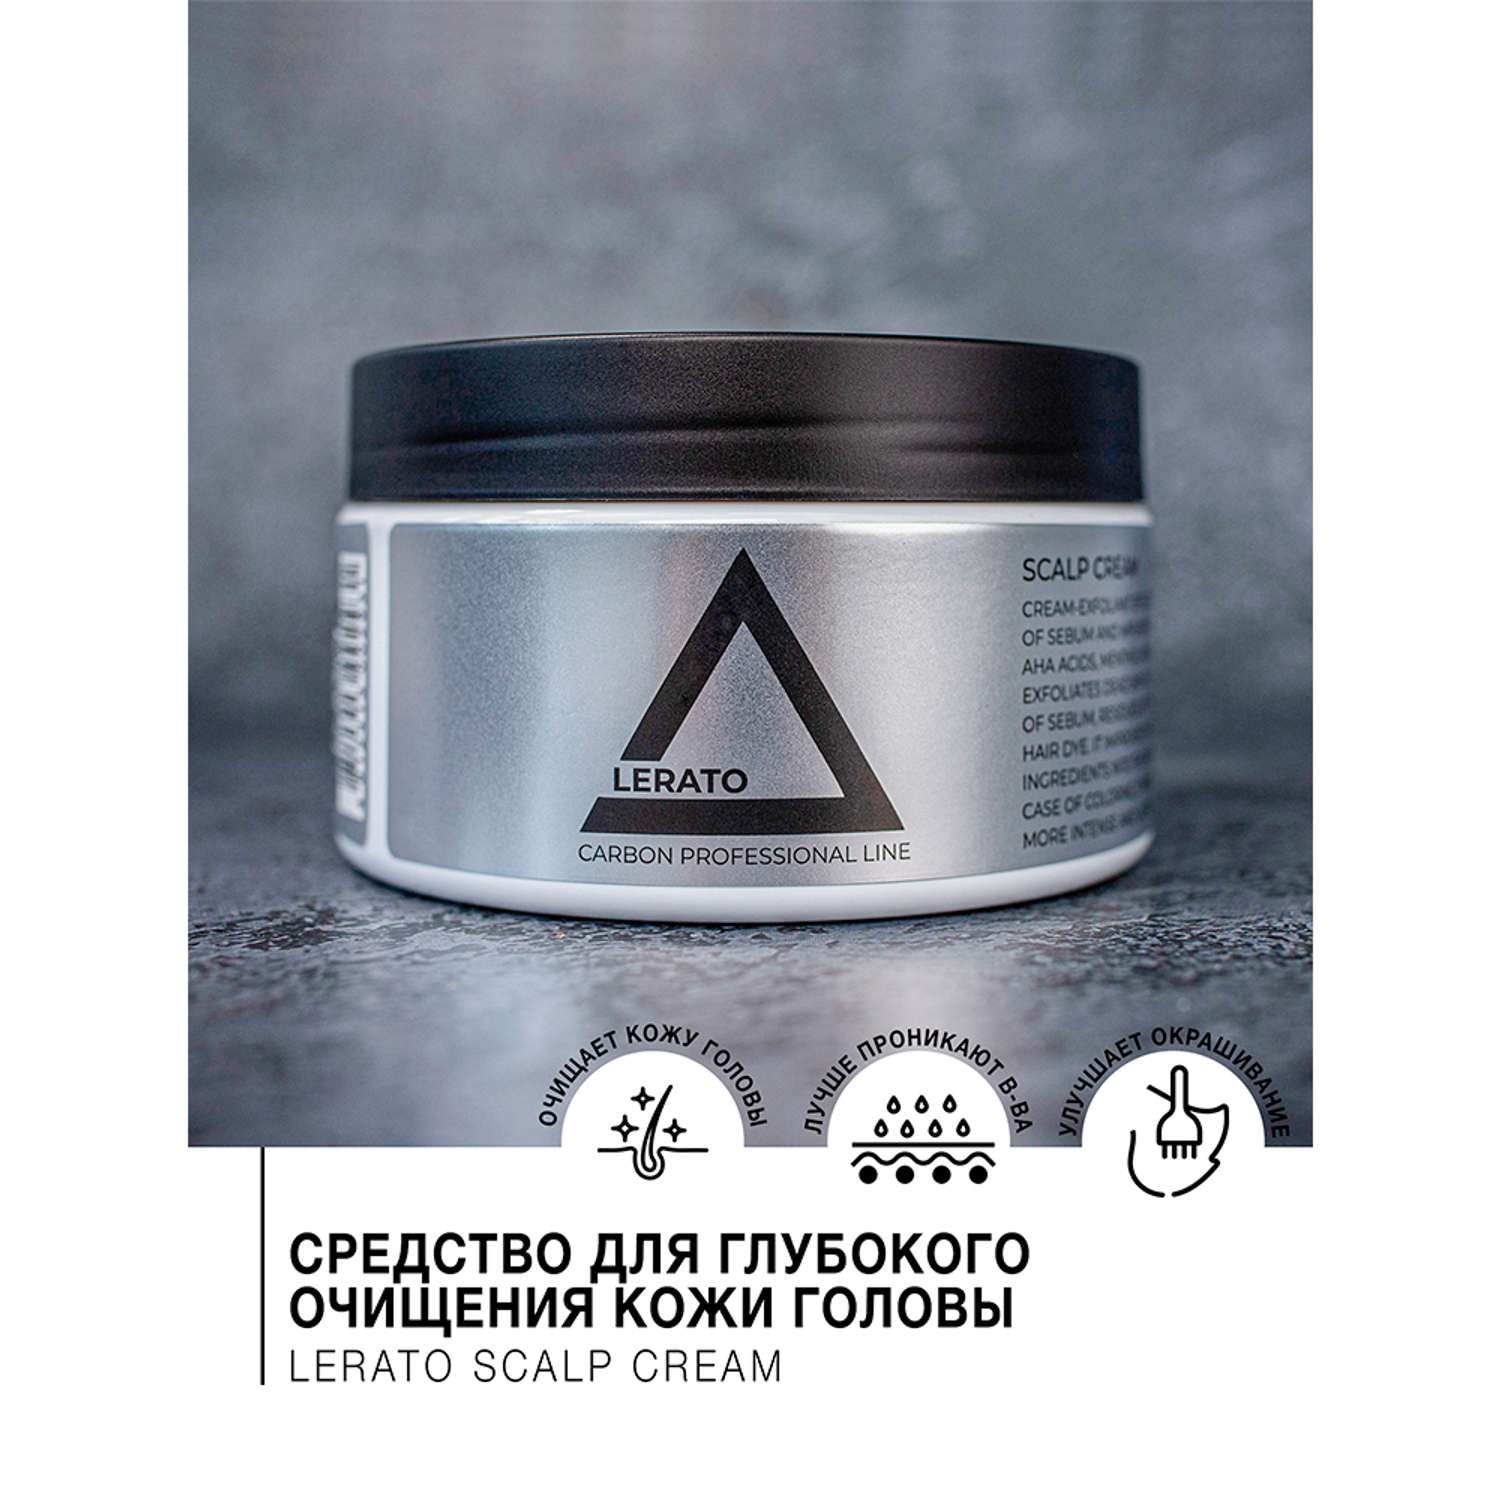 Скраб Lerato Cosmetic для глубокого очищения кожи головы Scalp Cream 300 мл - фото 2